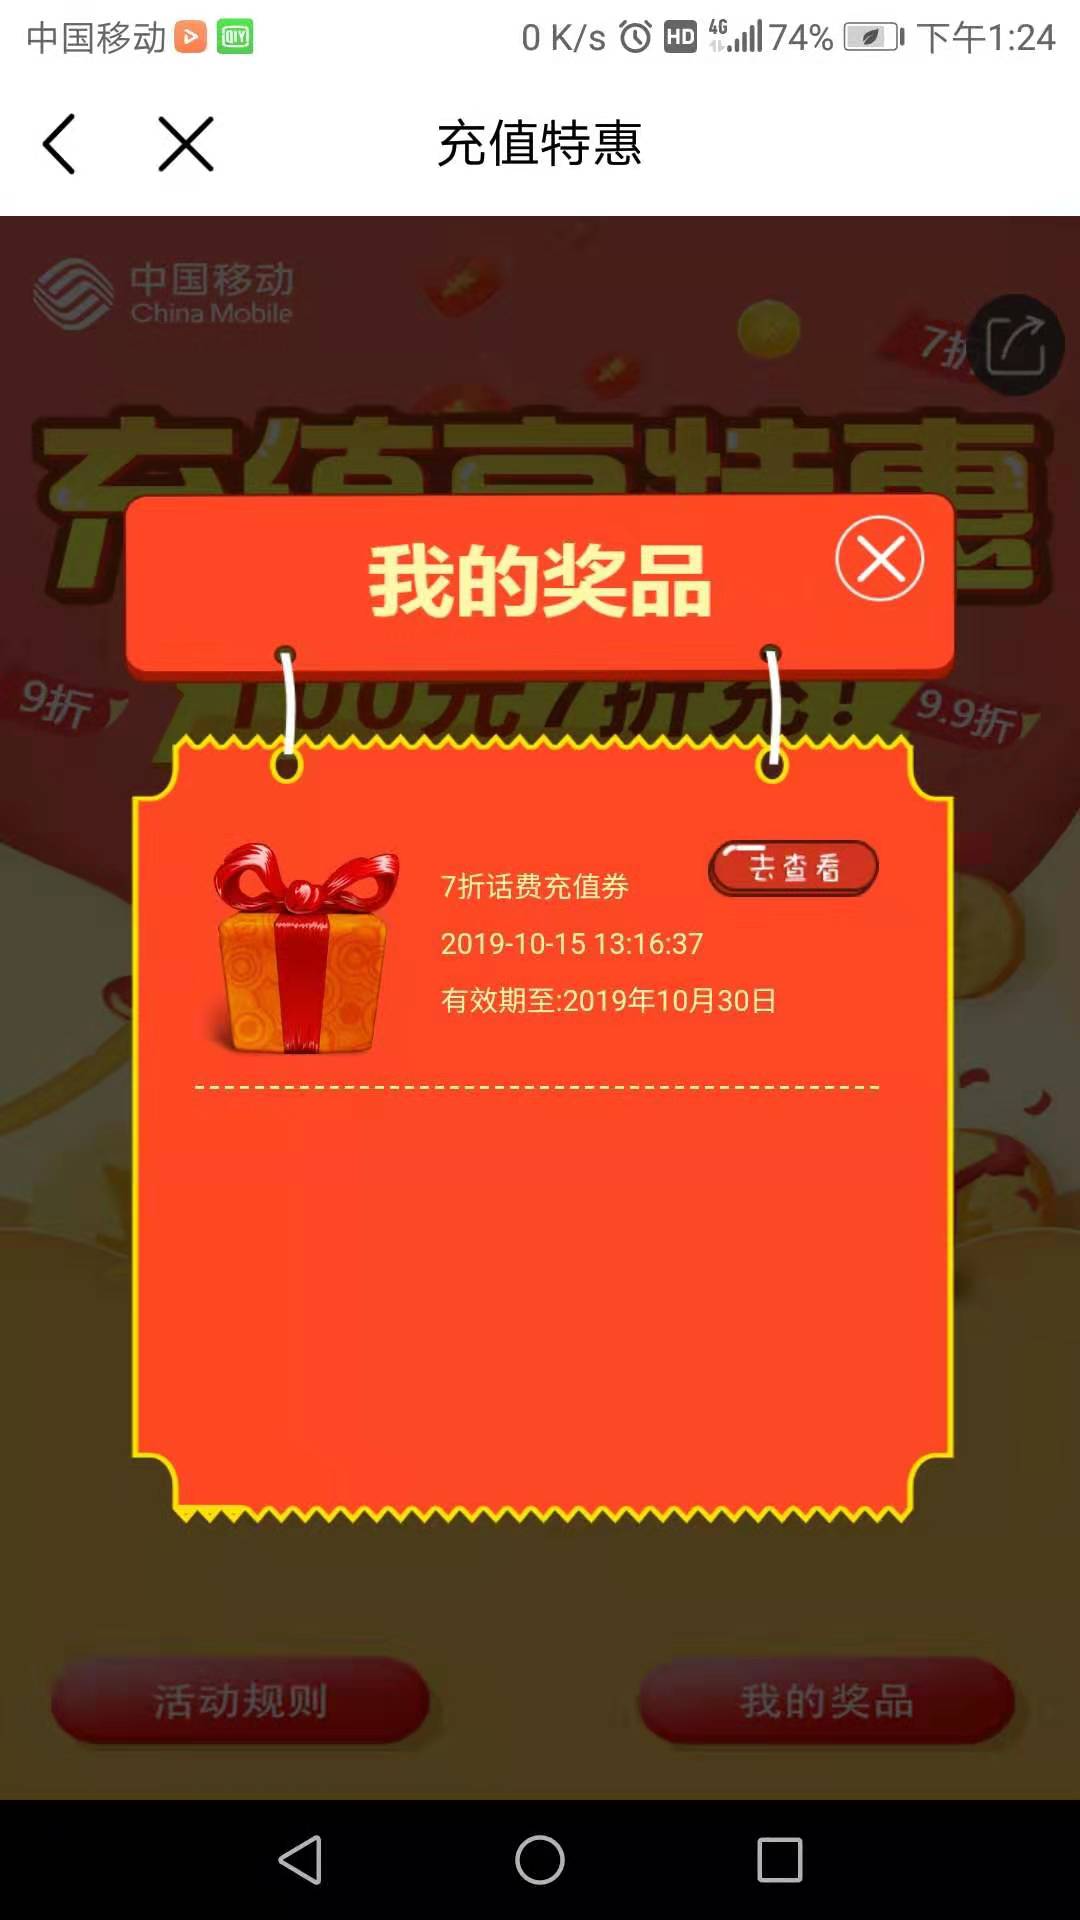 中国移动app 刮刮乐活动-可7折充话费-惠小助(52huixz.com)